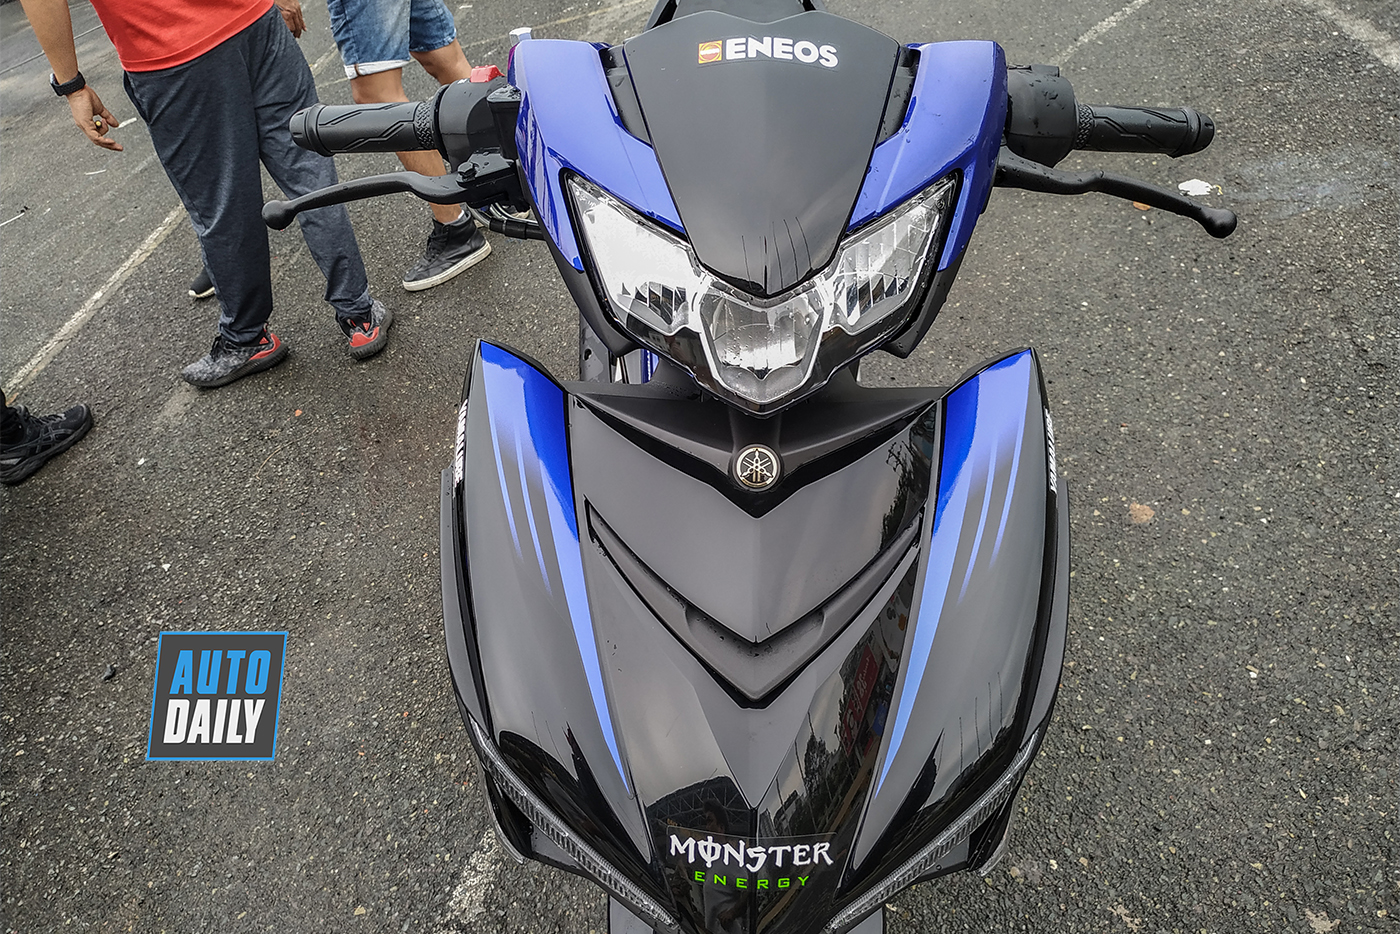 Xe máy Yamaha Exciter 155 VVA Phiên Bản Monster Energy  Xe côn tay